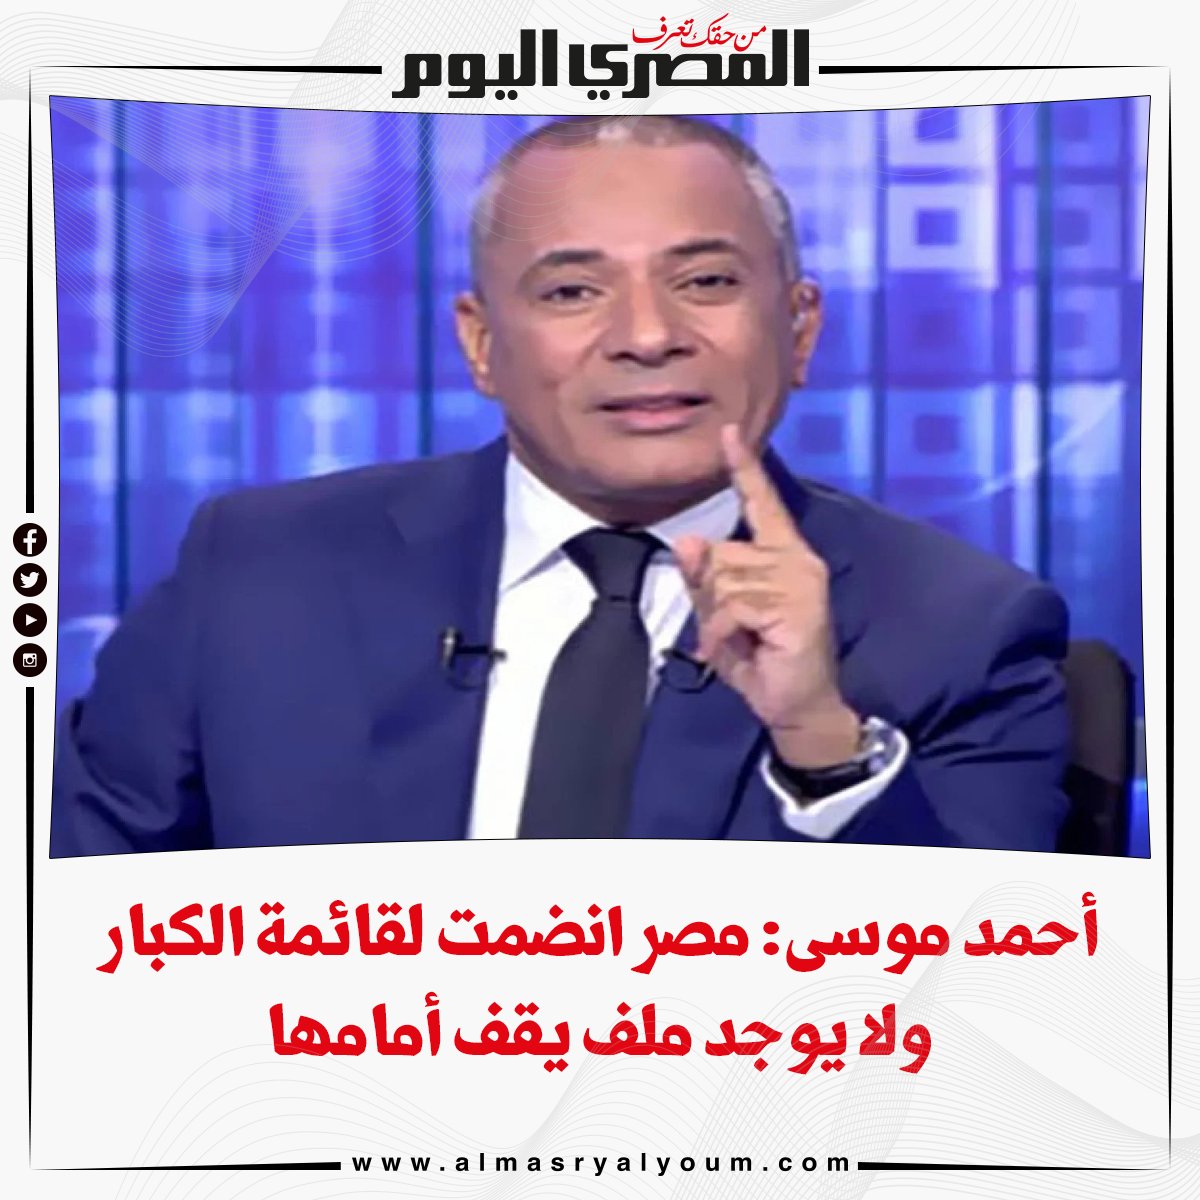 بالفيديو أحمد موسى مصر انضمت لقائمة الكبار ولا يوجد ملف يقف أمامها